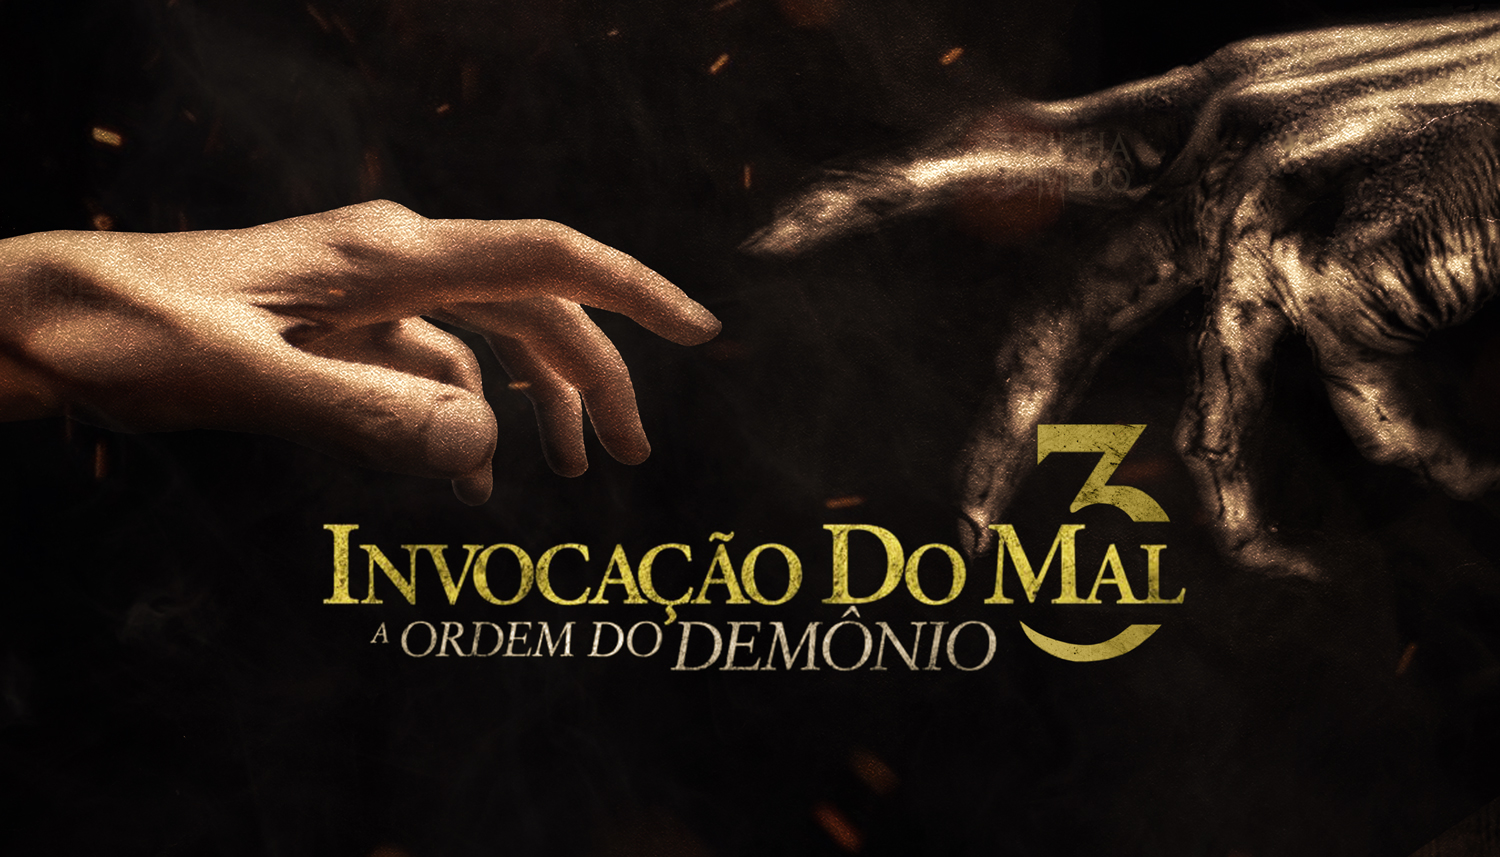 Tudo Sobre "Invocação do Mal 3" - Sinopse, Elenco e Imagens the conjuring 3 the devil made me do it poster